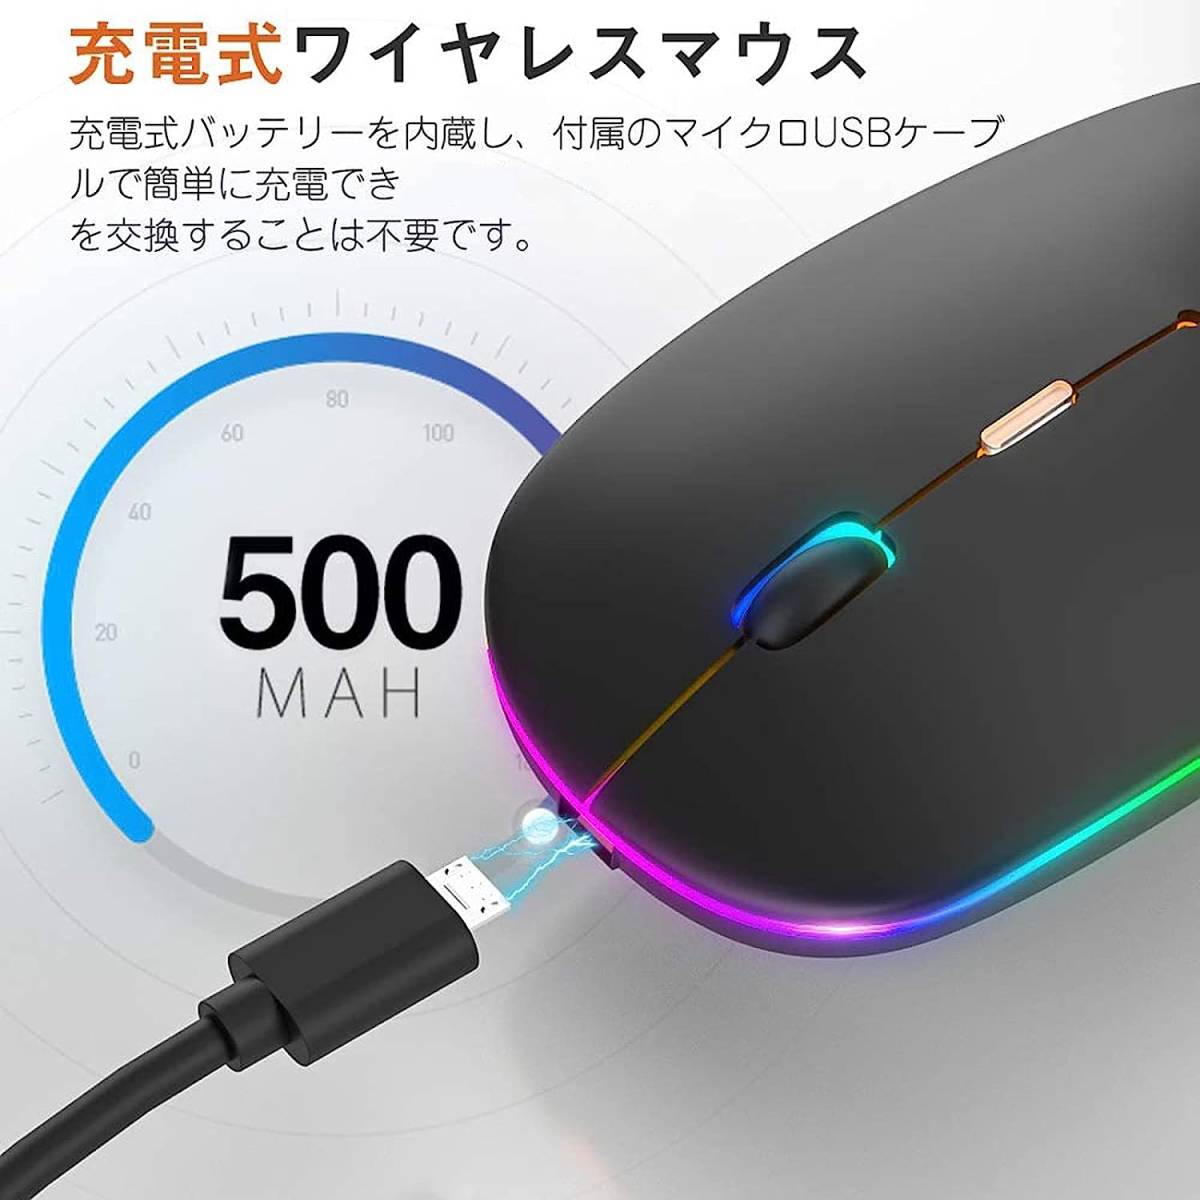 Hminier ワイヤレスマウス 7色 静音 持ち運び便利 無線 マウス 超薄型 左右対称型 Black 302